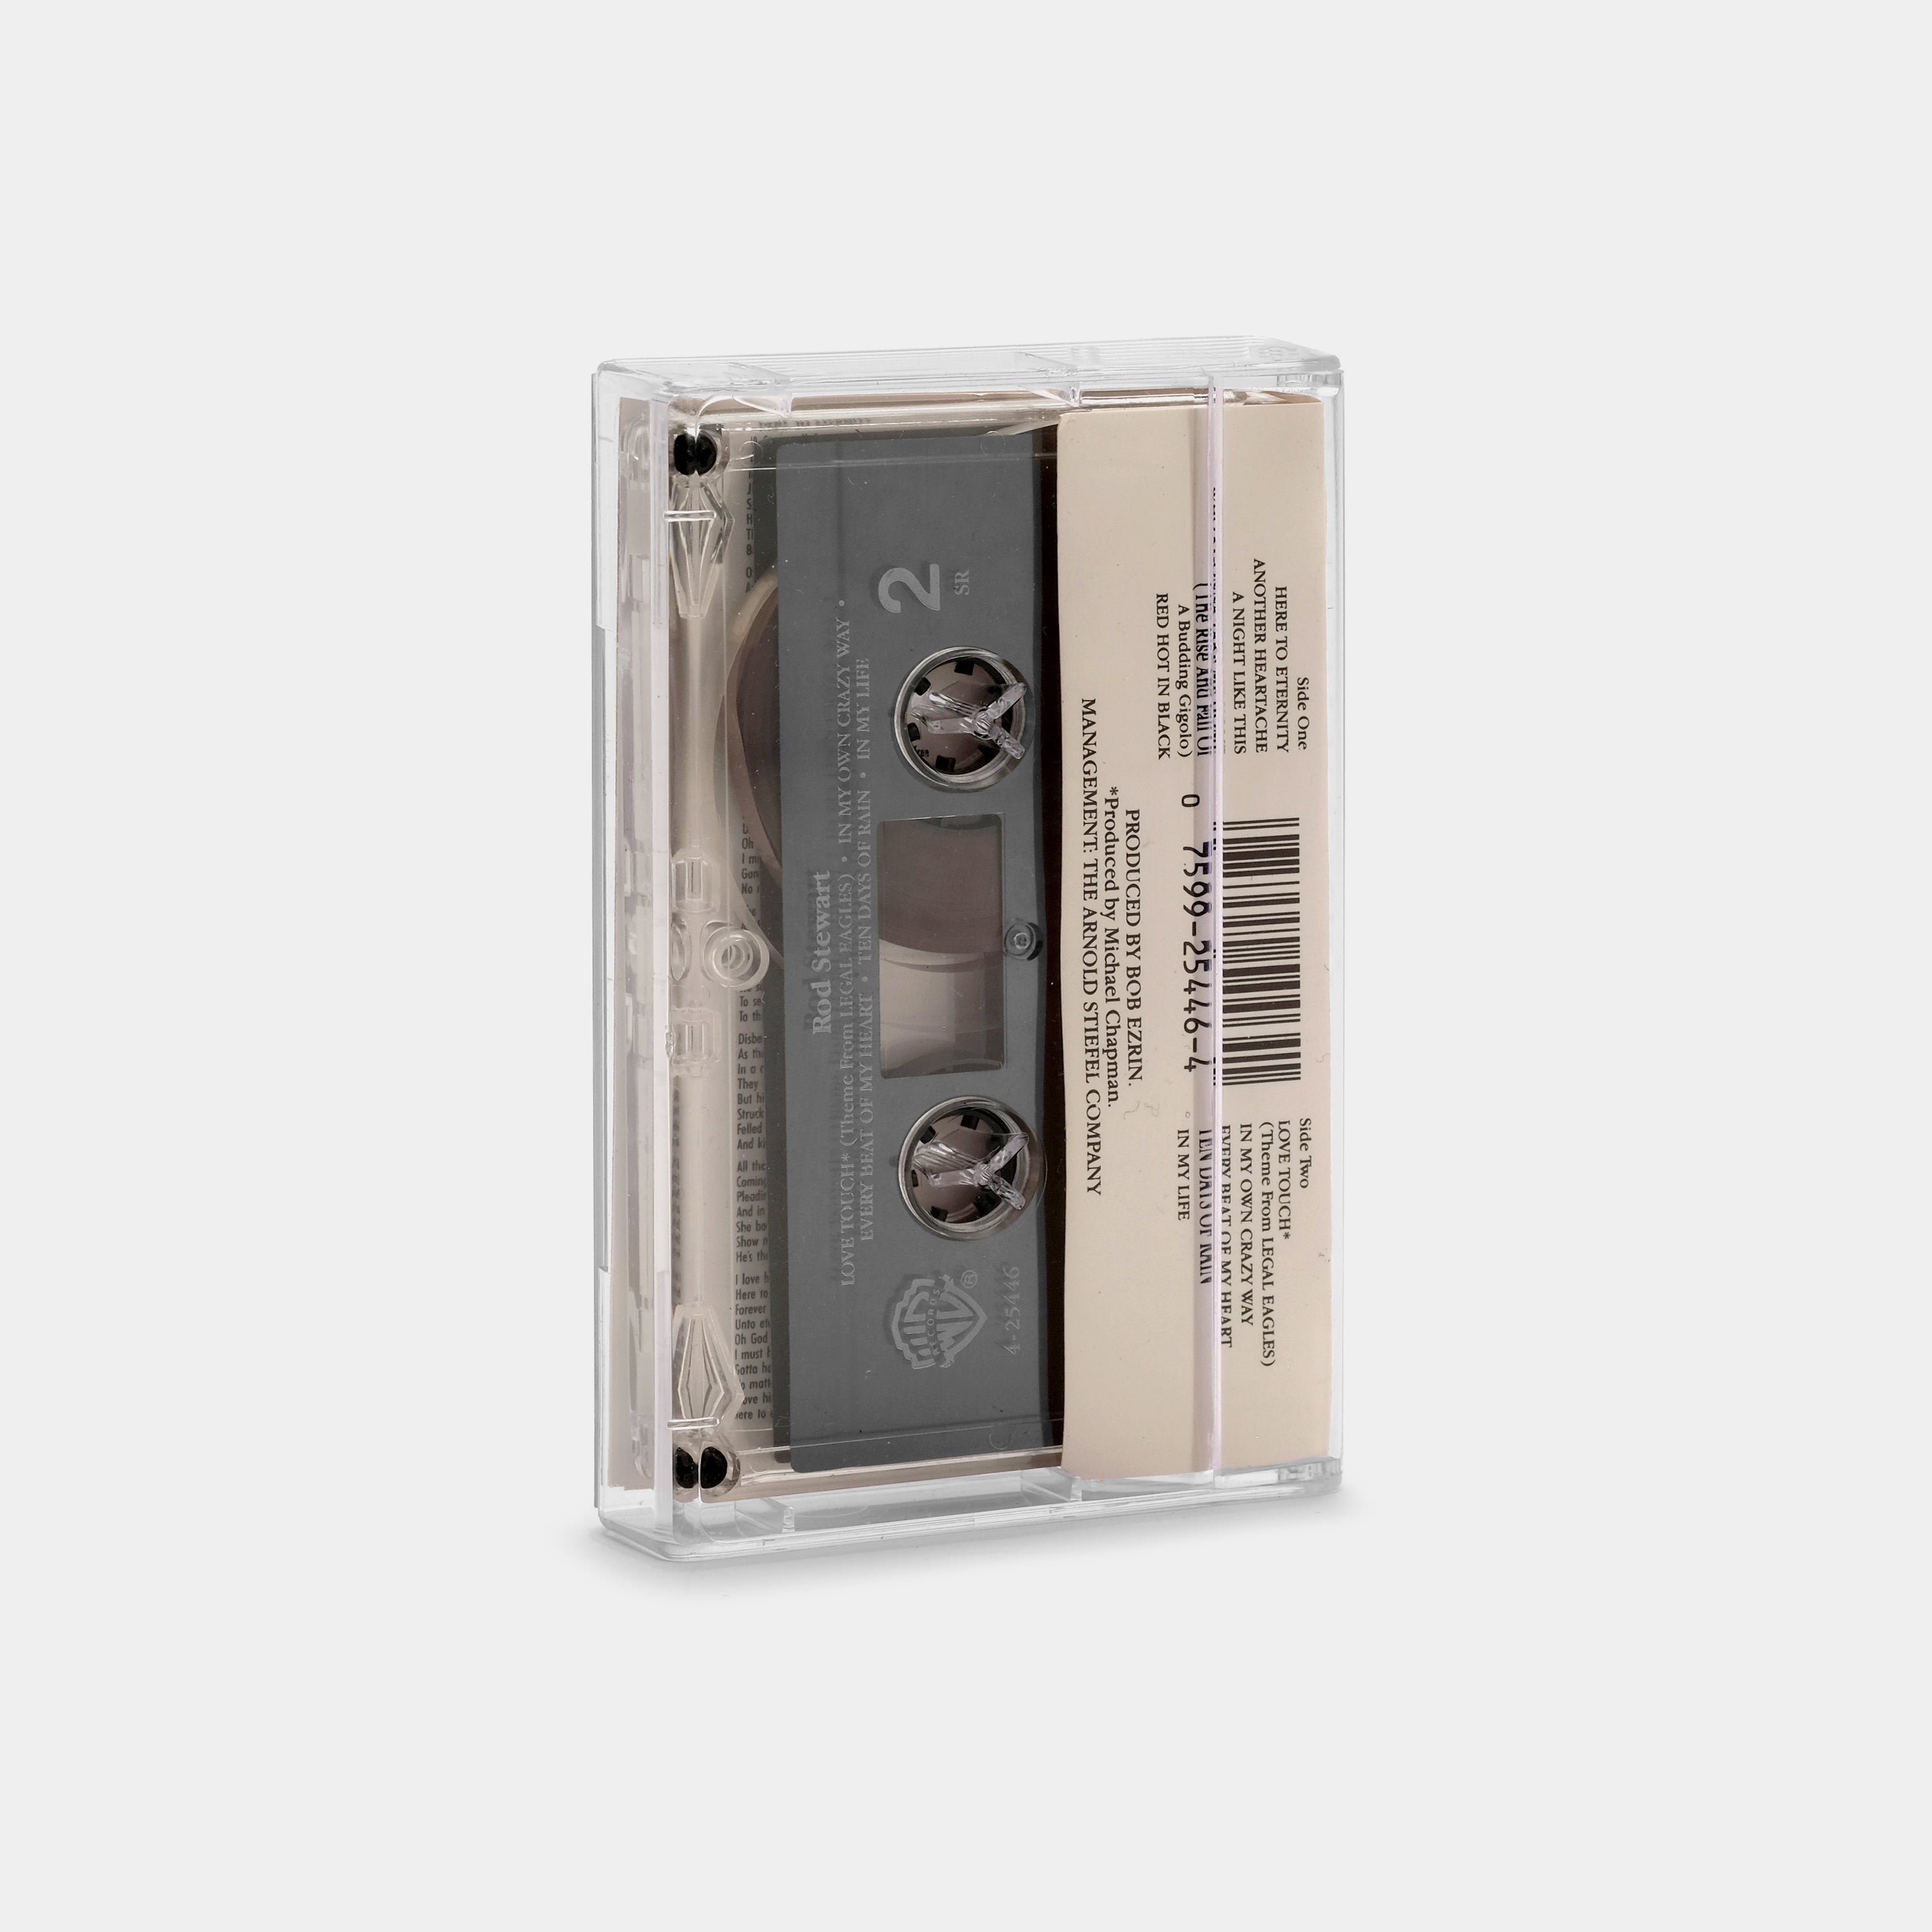 Rod Stewart - Every Beat Of My Heart Cassette Tape